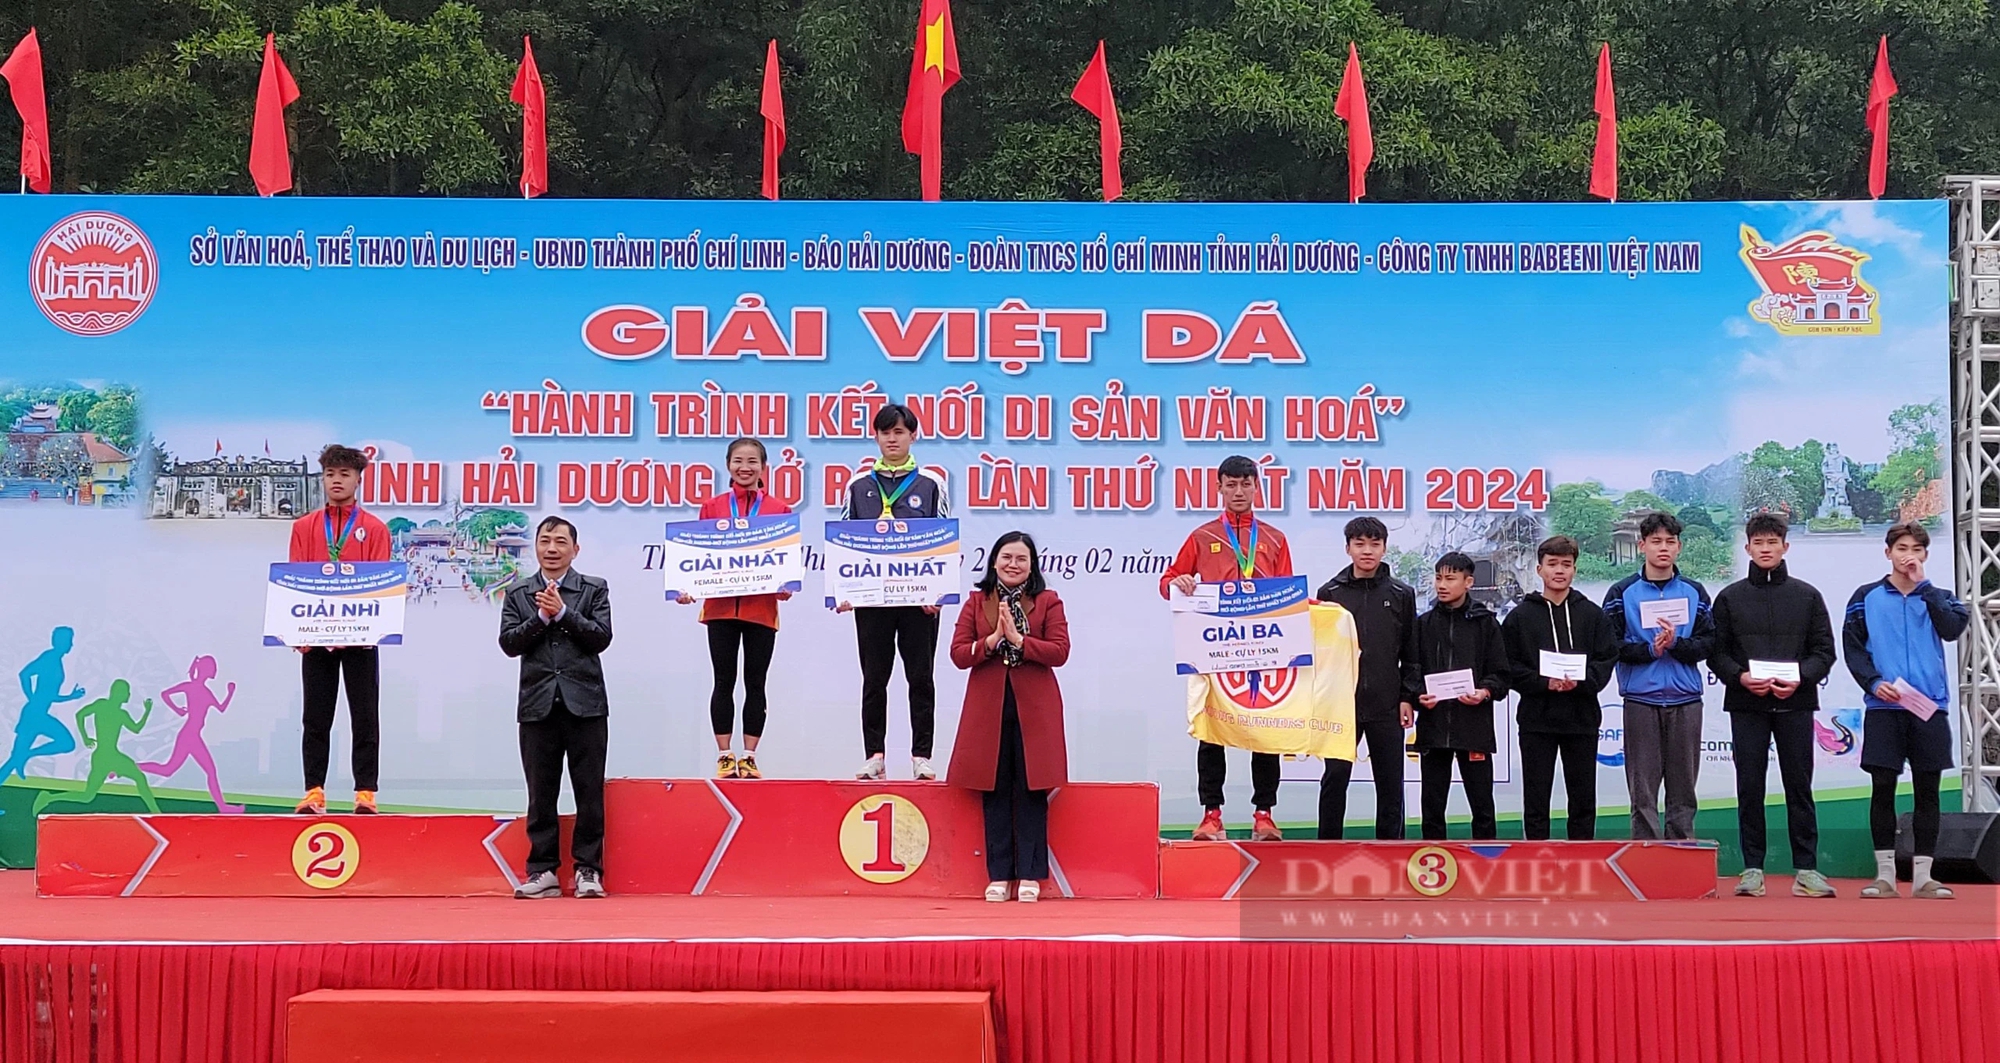 Cô gái "vàng" Nguyễn Thị Oanh và gần 1.000 người tham gia Giải Việt dã tỉnh Hải Dương mở rộng lần thứ nhất- Ảnh 8.